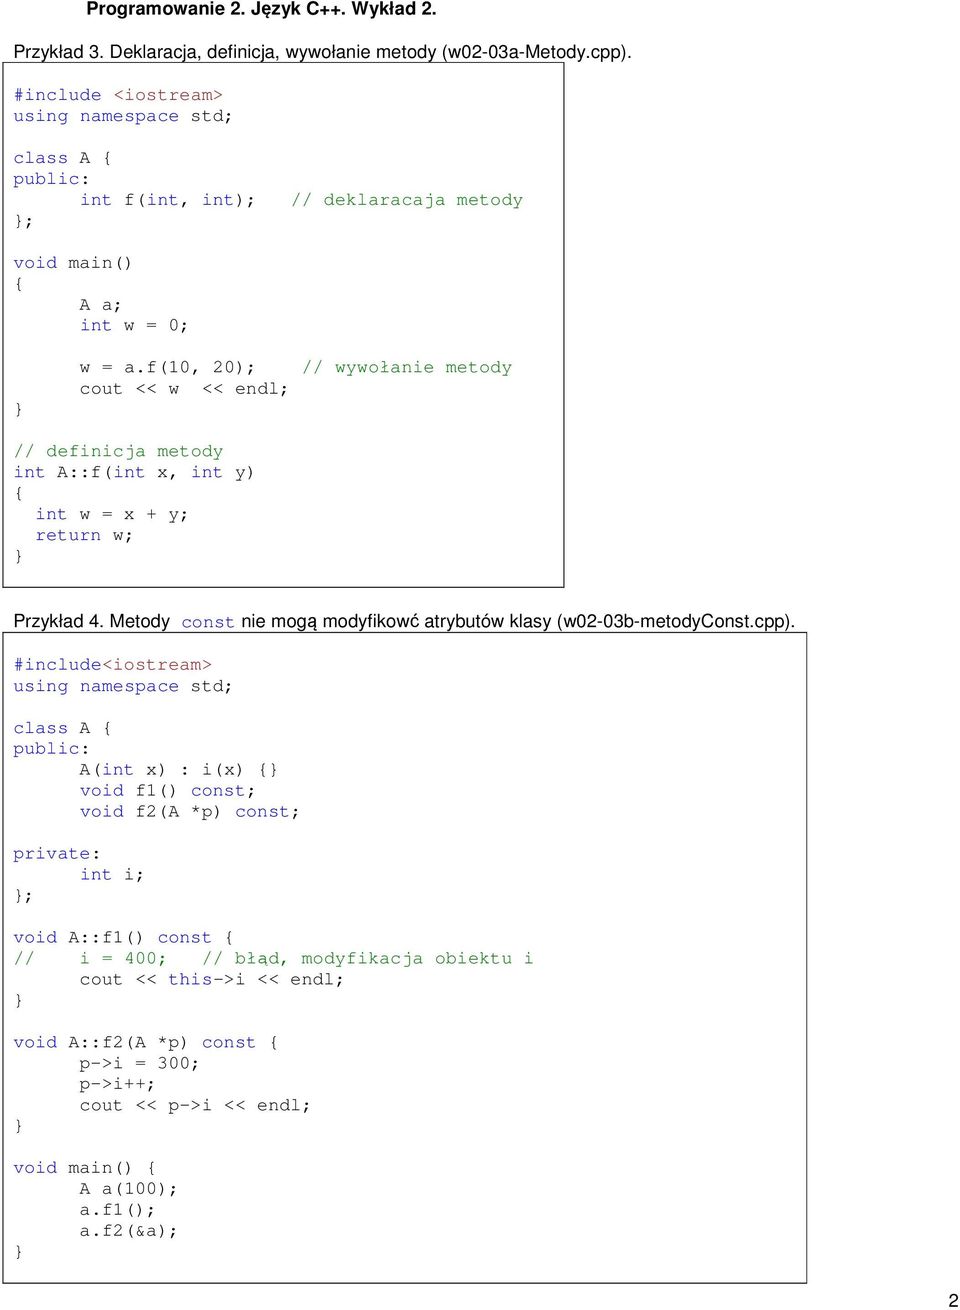 Metody const nie mogą modyfikowć atrybutów klasy (w02-03b-metodyconst.cpp).